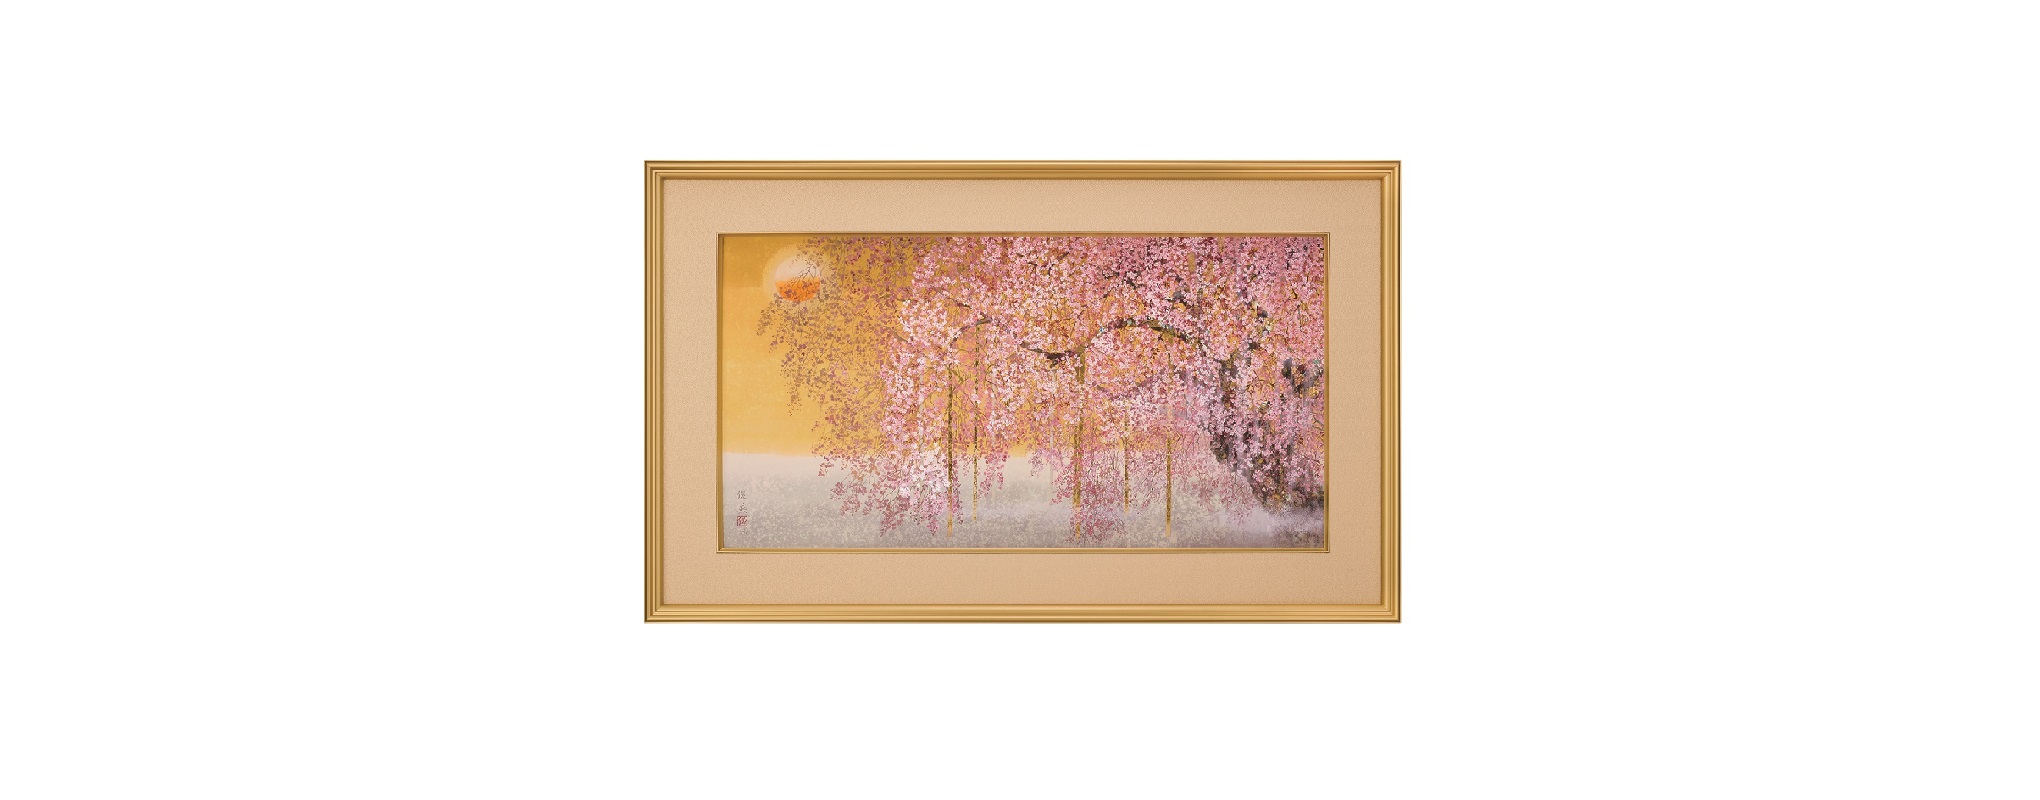 いま活躍が注目されている日本画家、西田俊英画伯が描いた、桜のいのちの輪廻「近衛桜 日月」